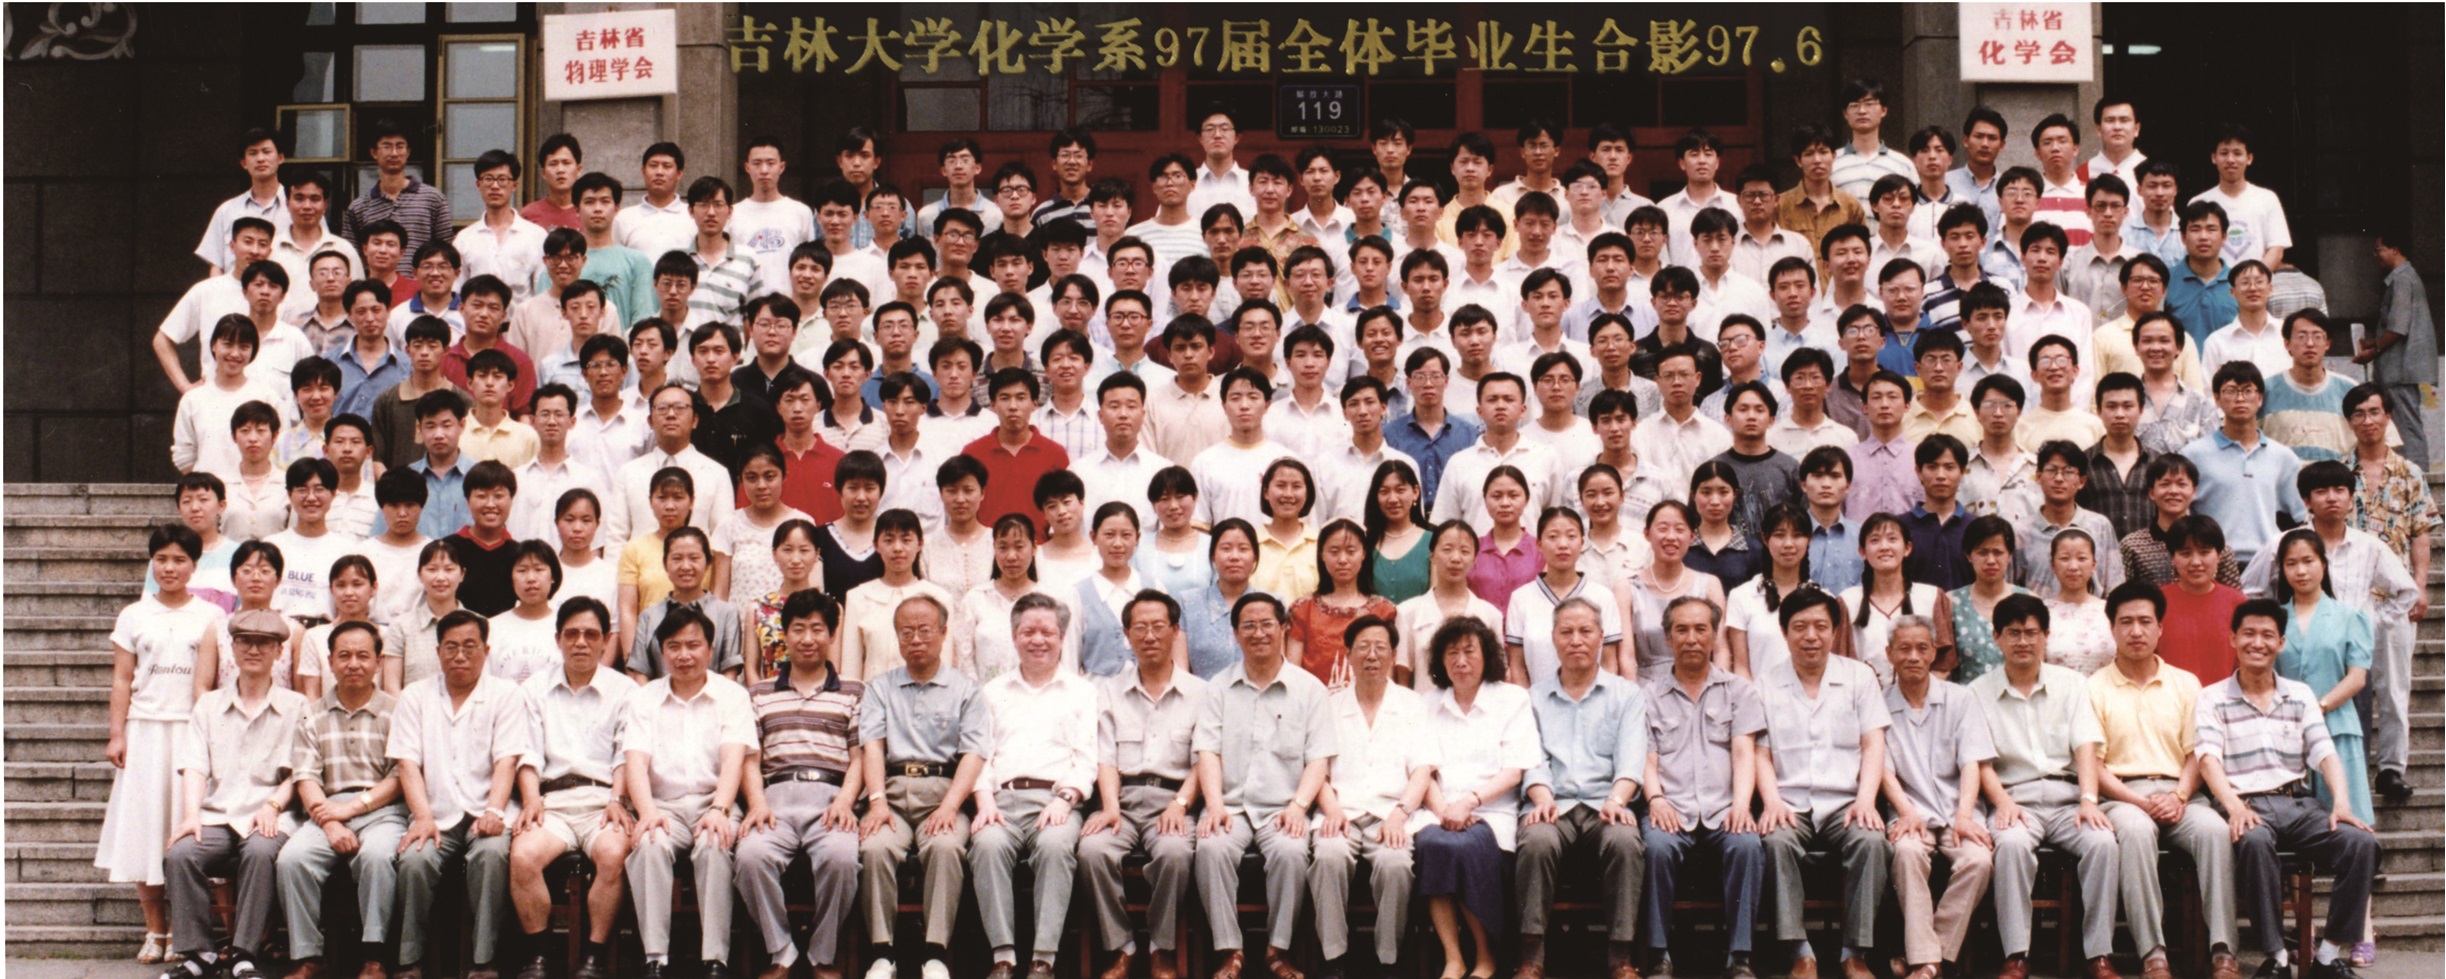 4066金沙化学系1997届全体毕业生留影